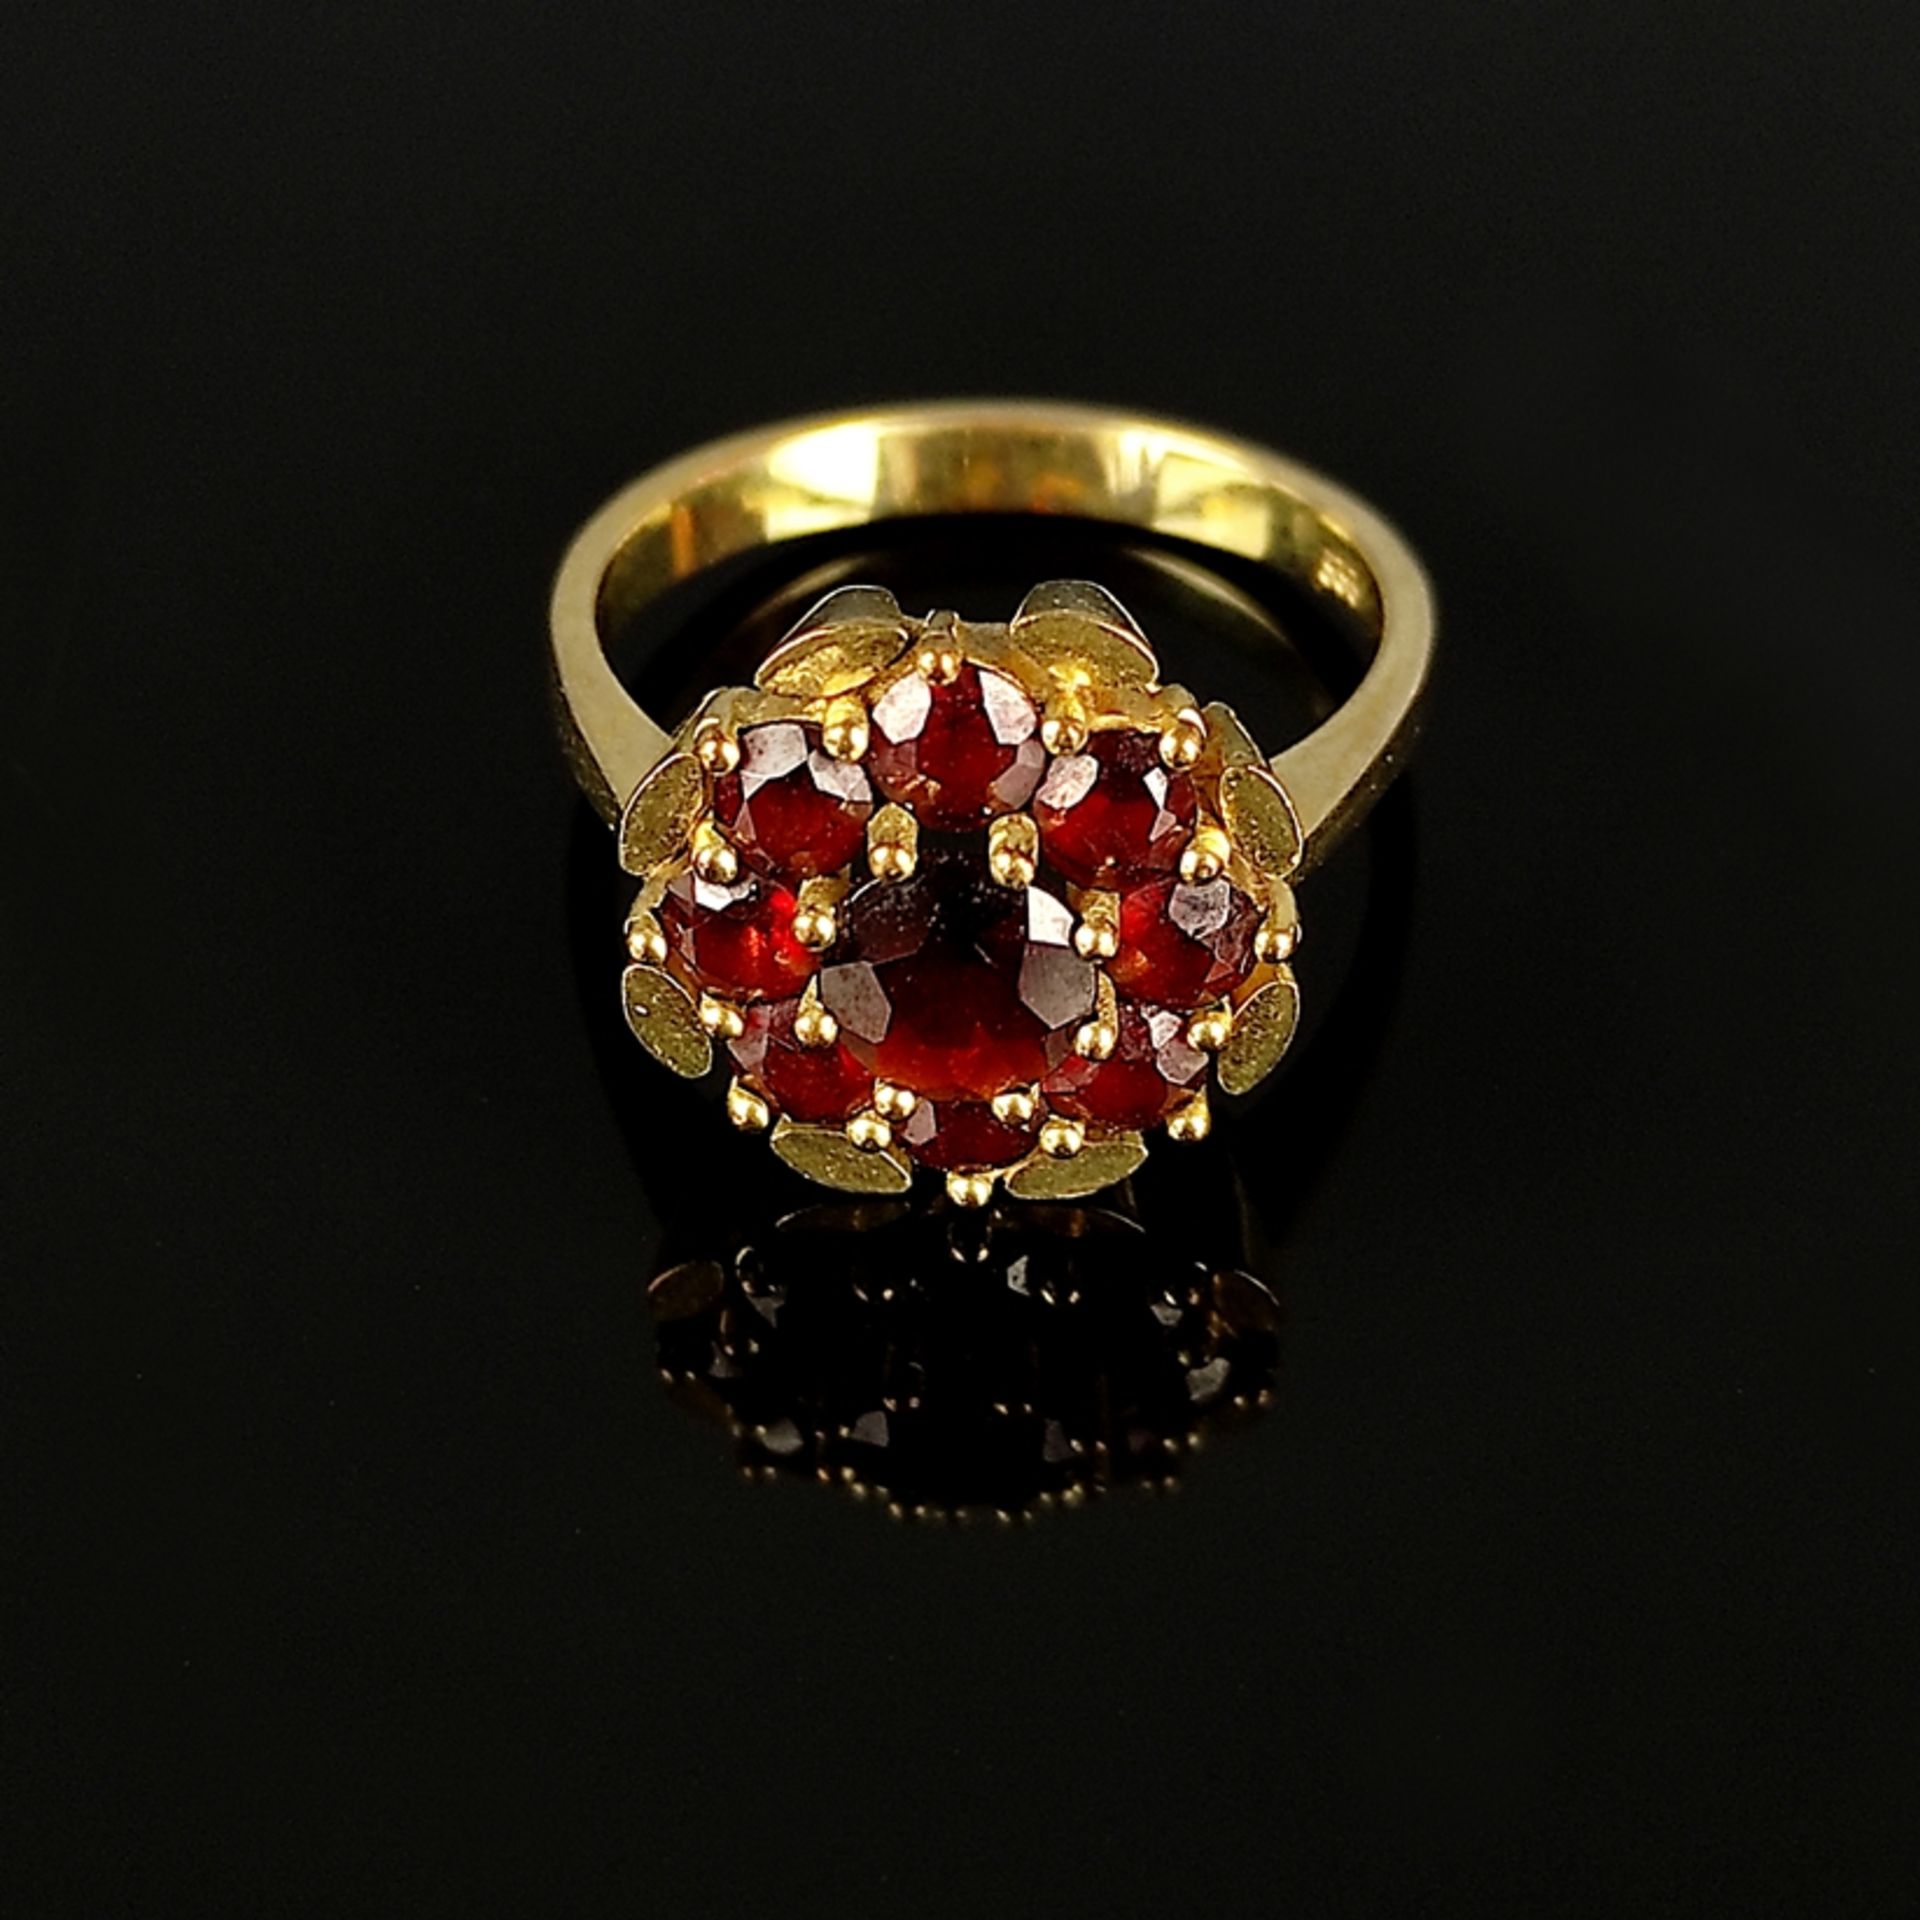 Granat-Ring, 333/8K Gelbgold (punziert), 4,77g, Schauseite als Blume aus neun Granaten gearbeitet,  - Bild 2 aus 3